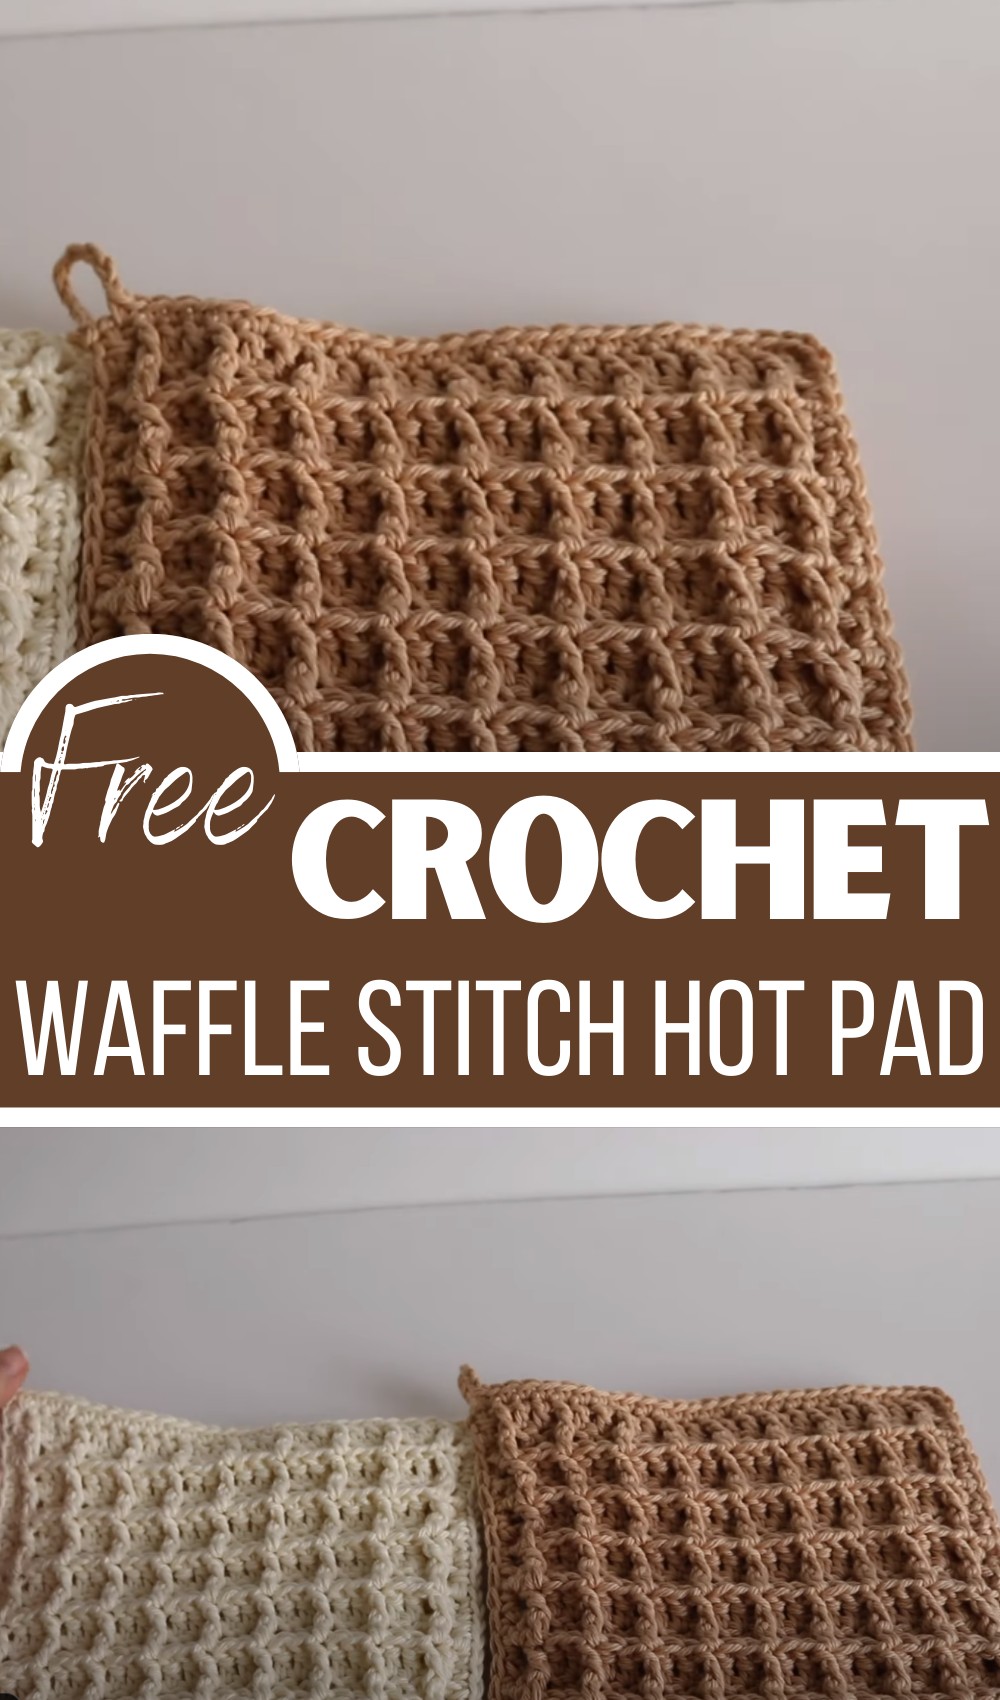 Waffle Stitch Hot Pad (1)